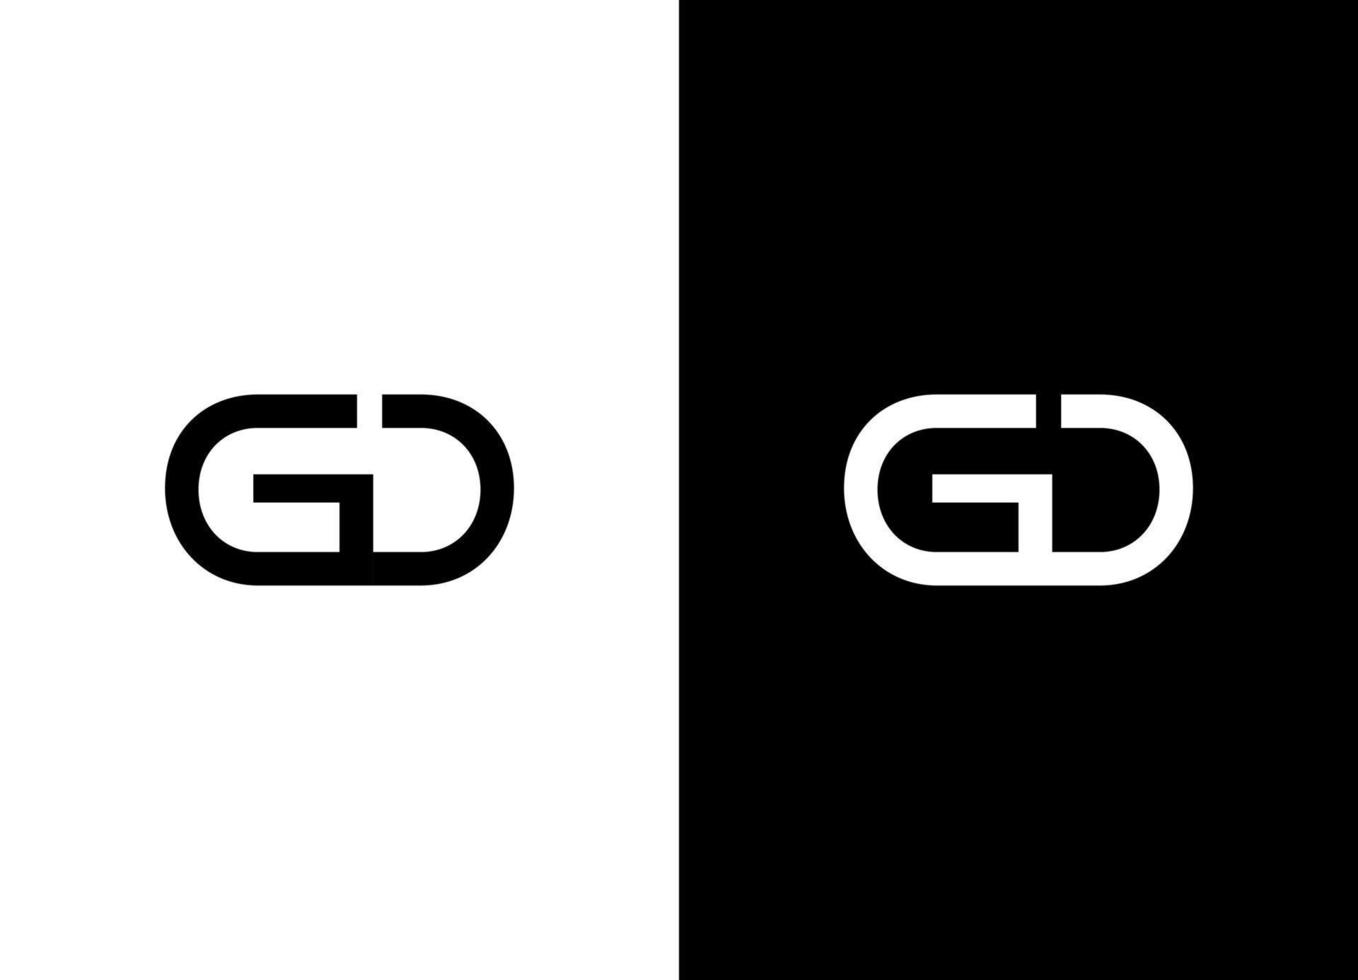 plantilla de vector libre de logotipo de letra gd o dg